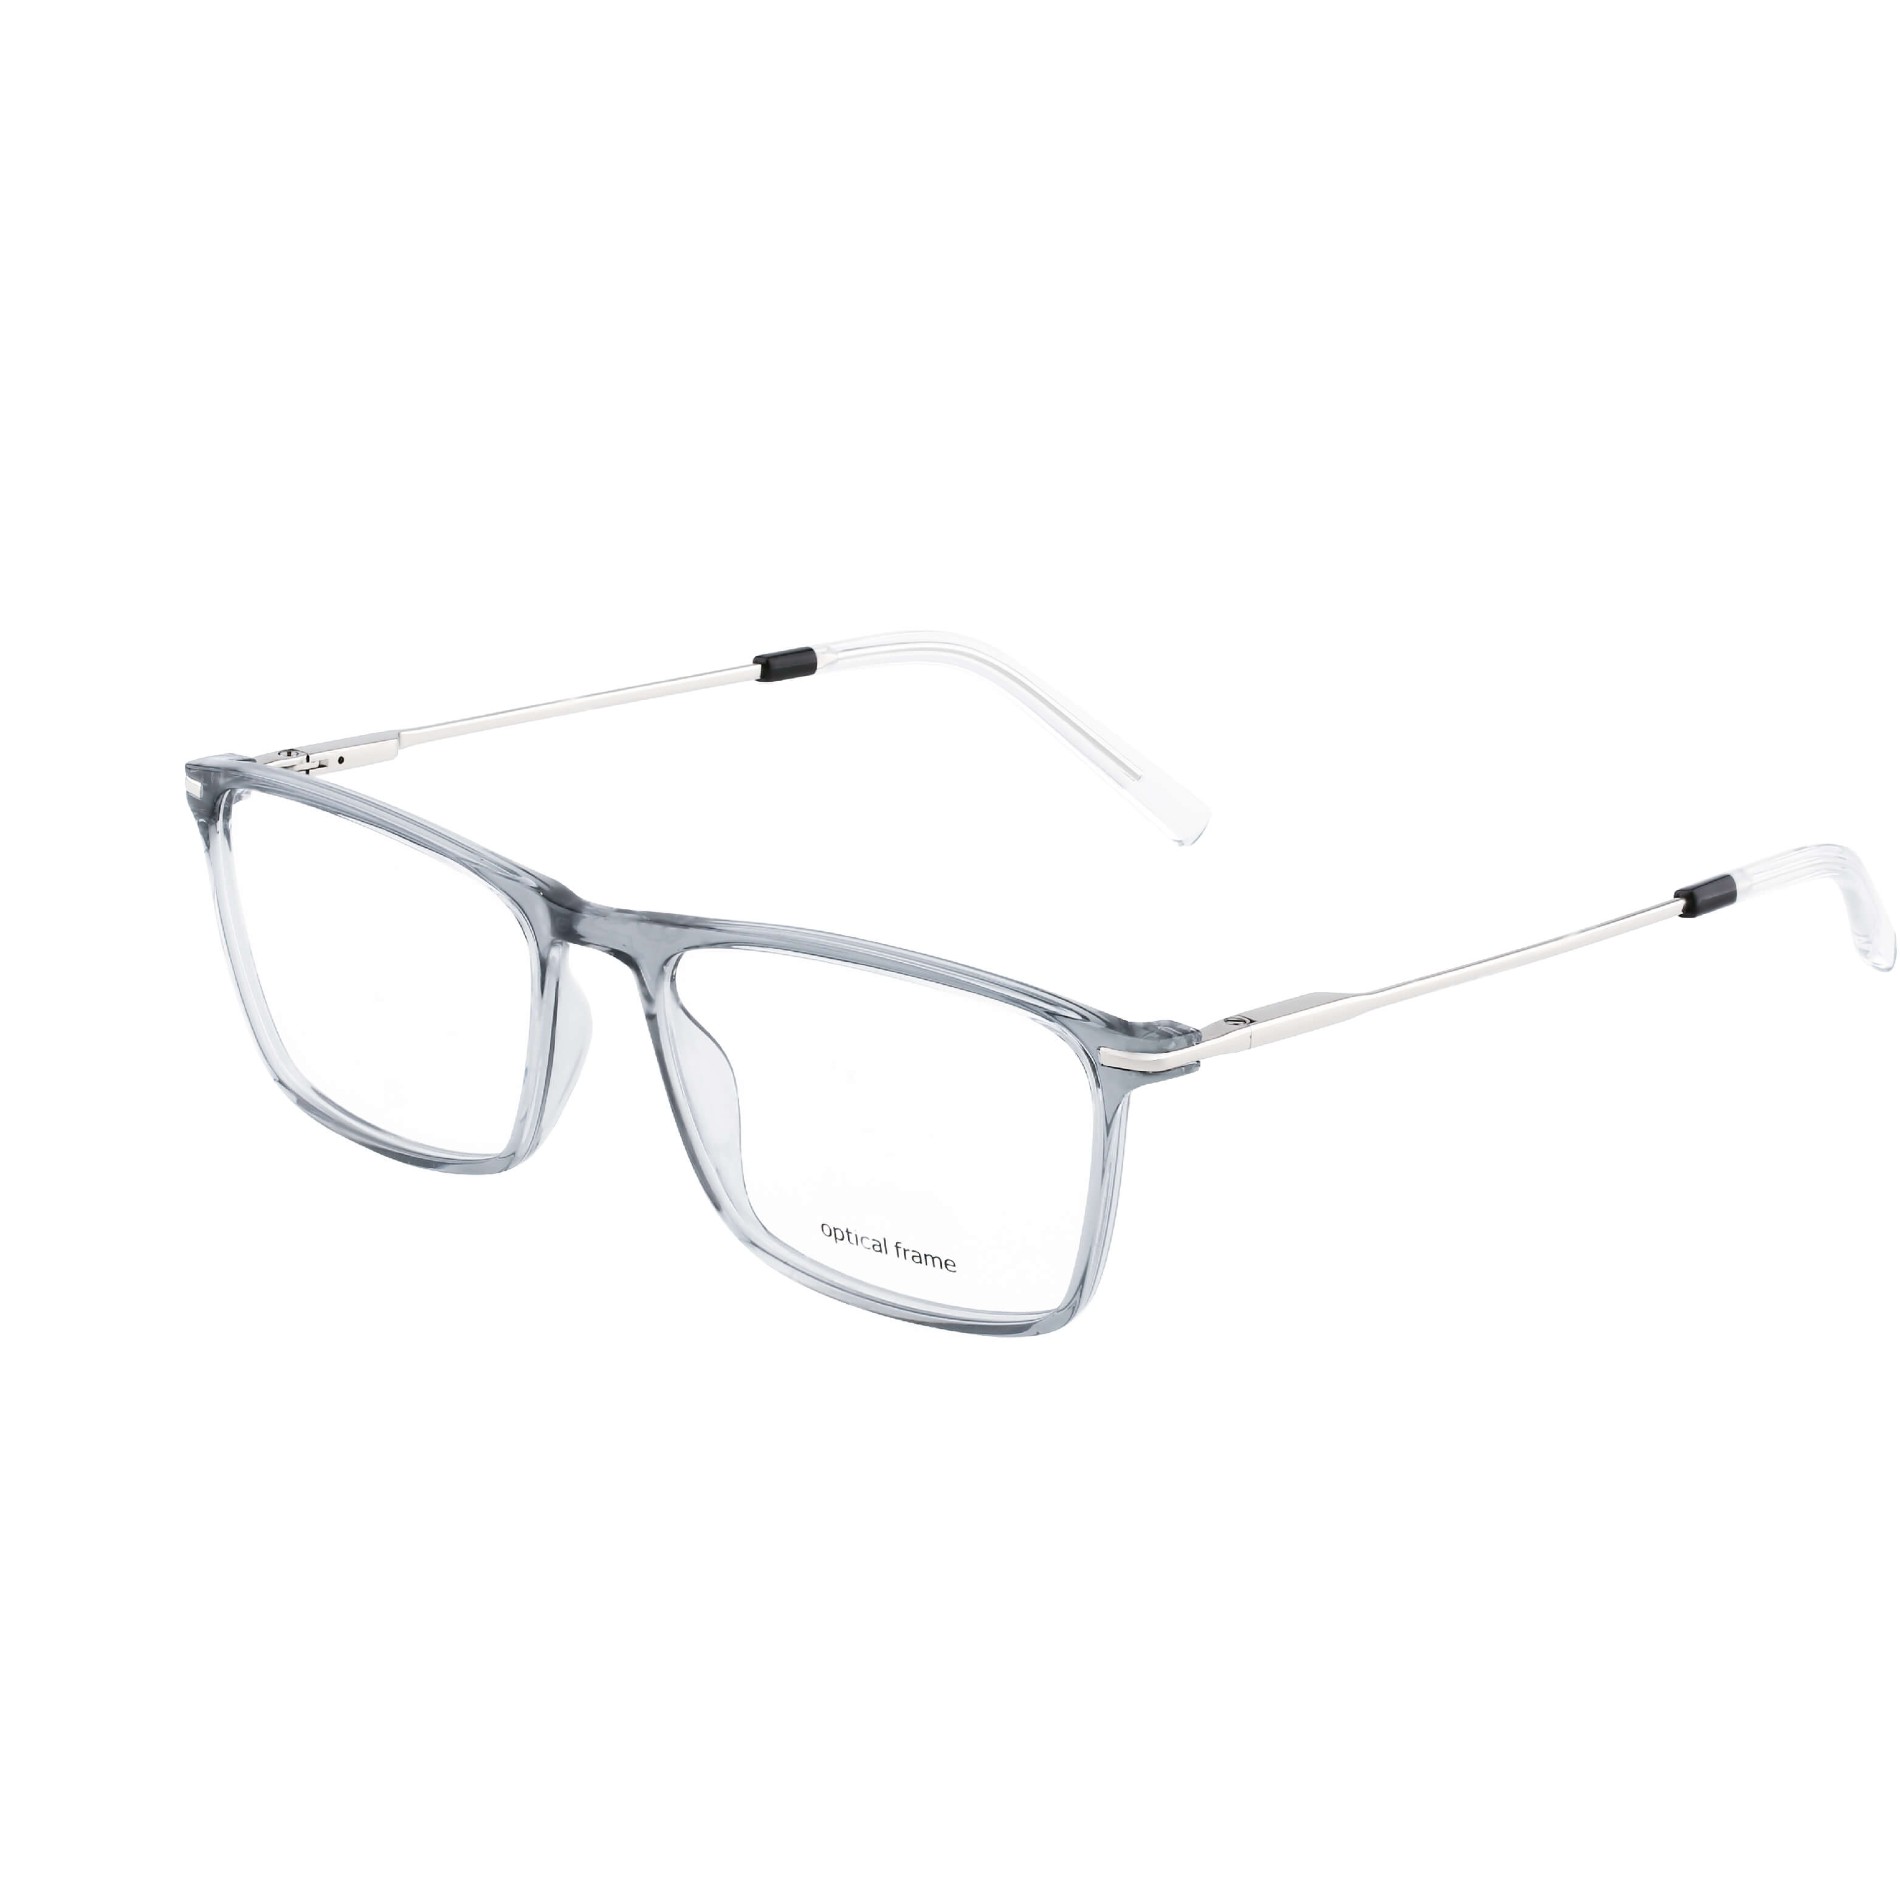 Flexible TR90 Optical Frames Eyeglasses for Men Manufacturers, Flexible TR90 Optical Frames Eyeglasses for Men Factory, Supply Flexible TR90 Optical Frames Eyeglasses for Men